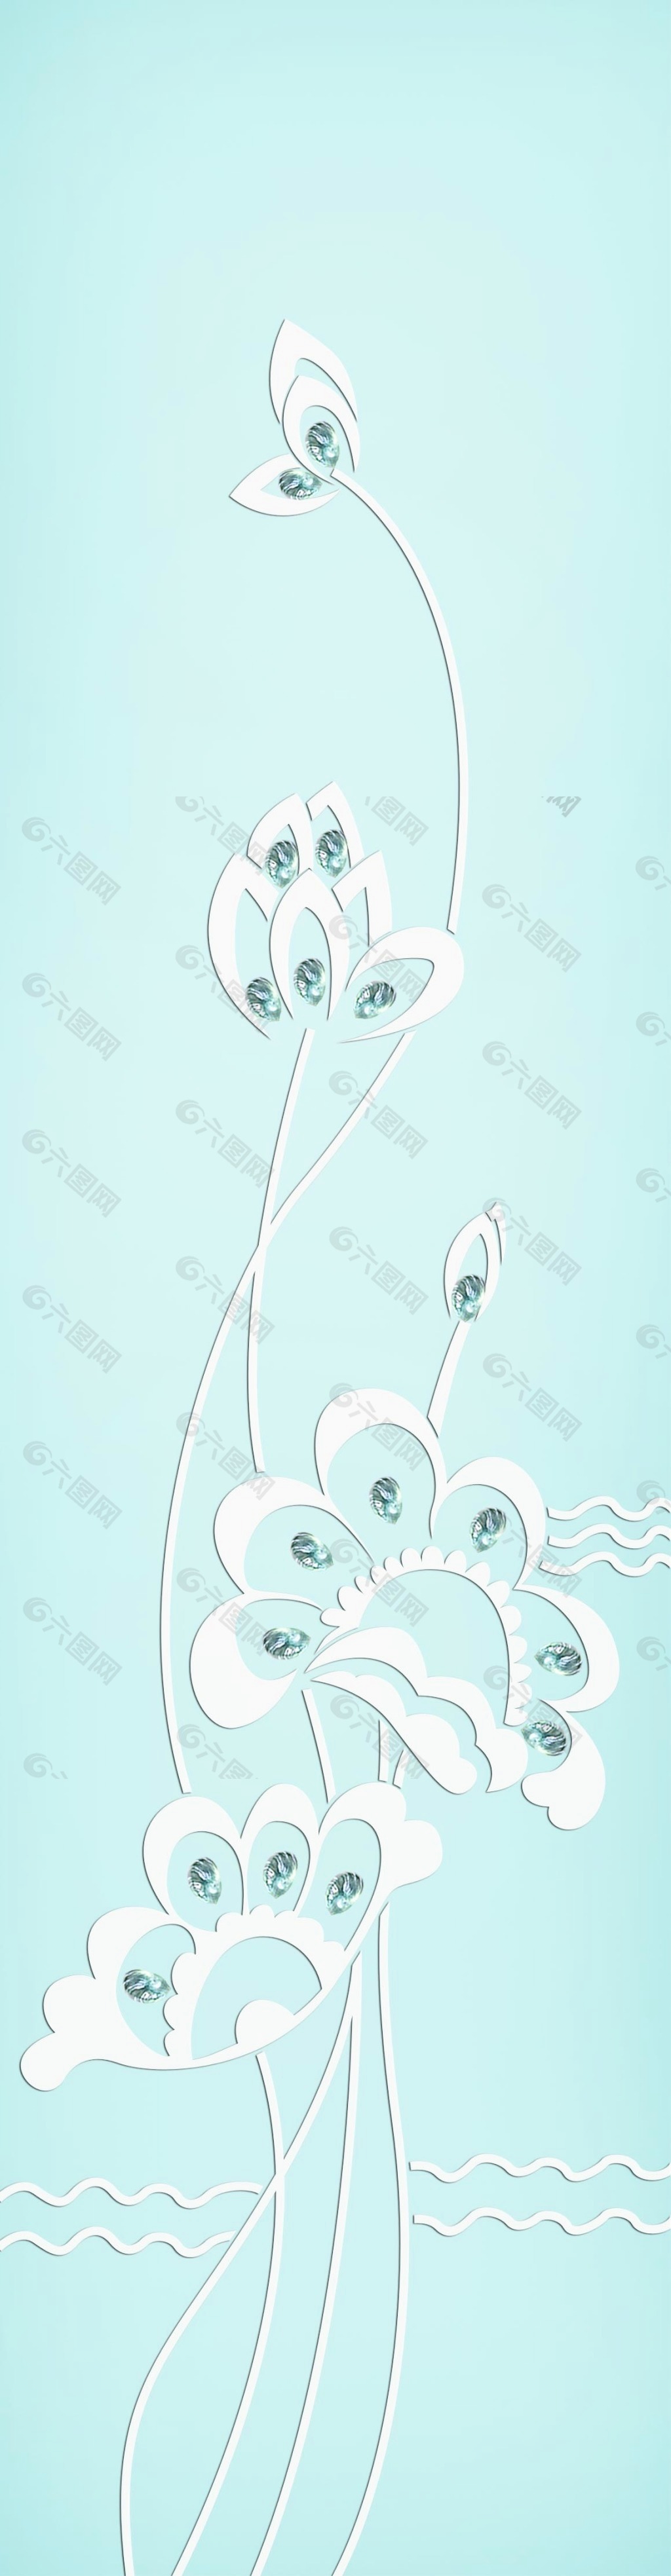 晶贝素花